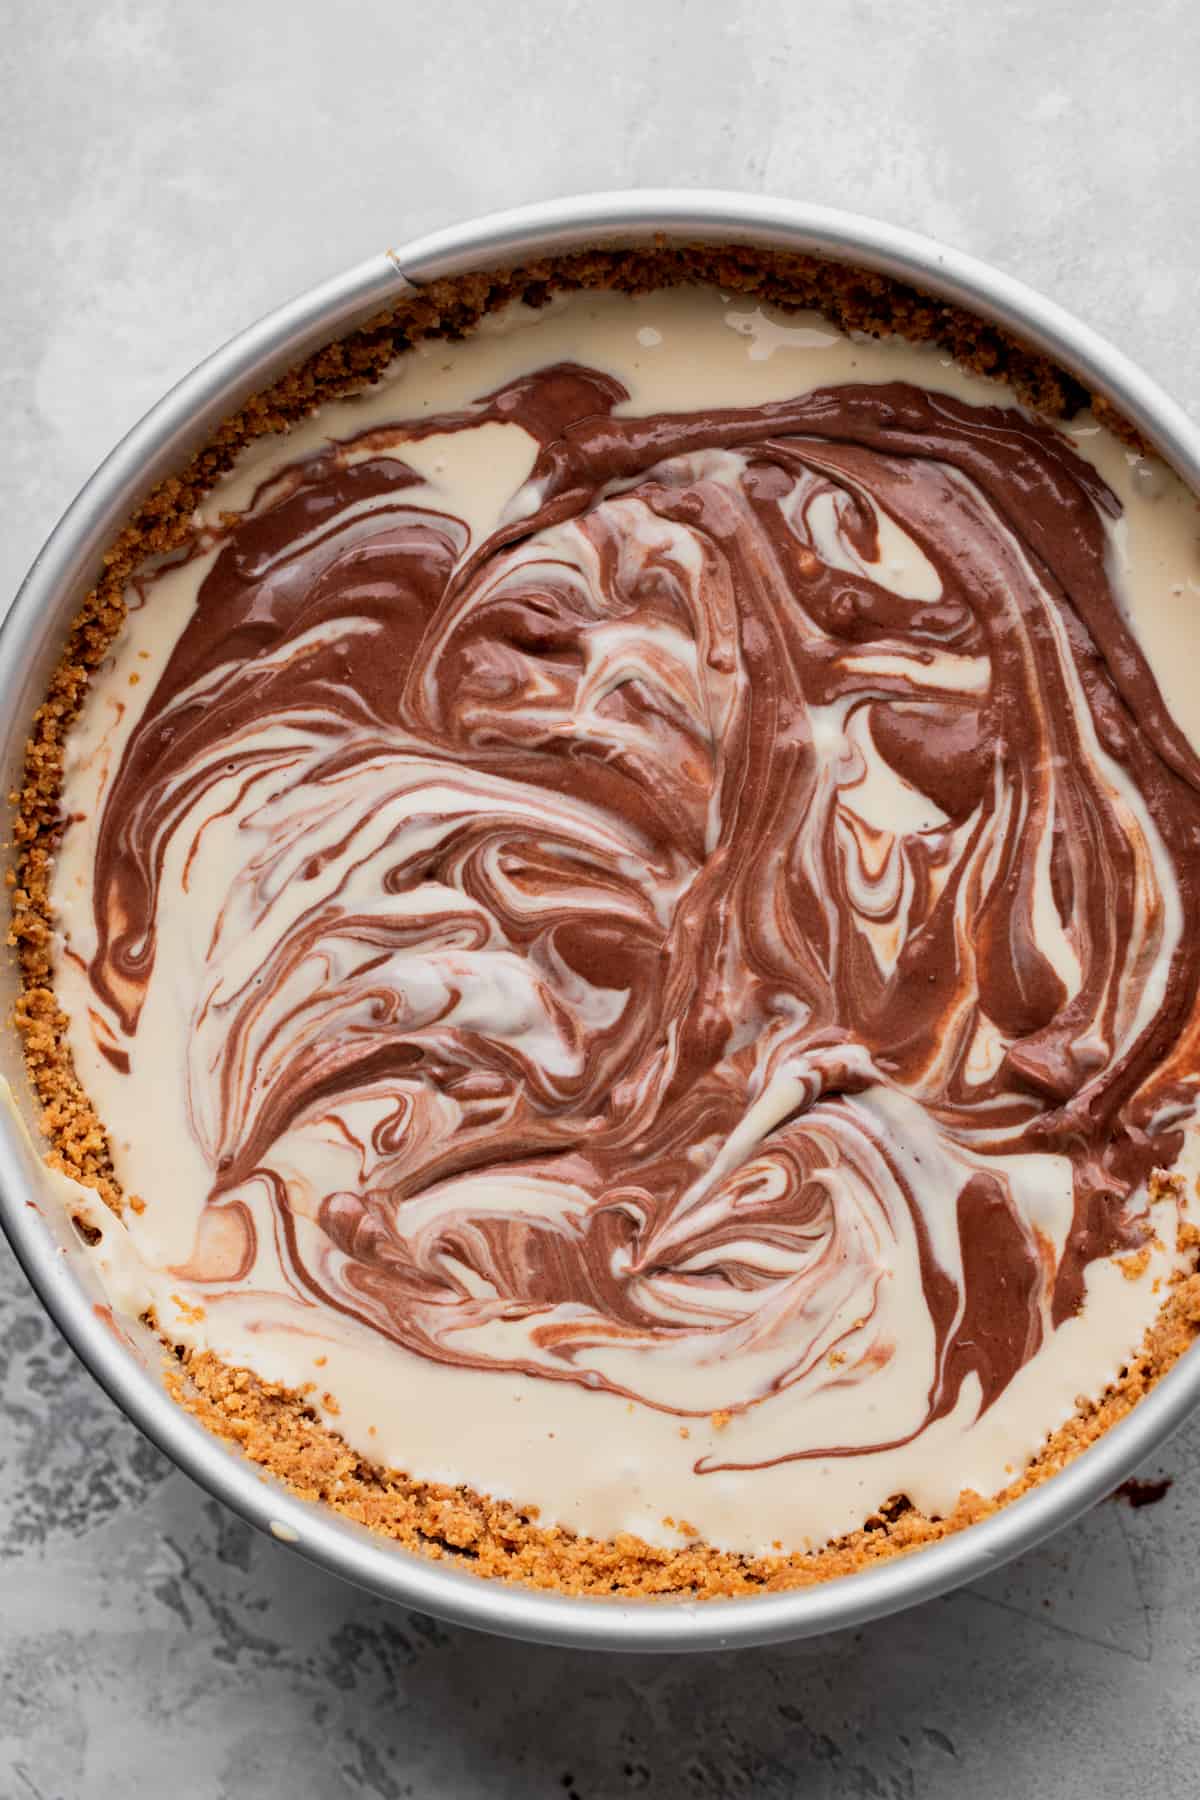 Swirled chocolate cheesecake on the cheesecake batter.